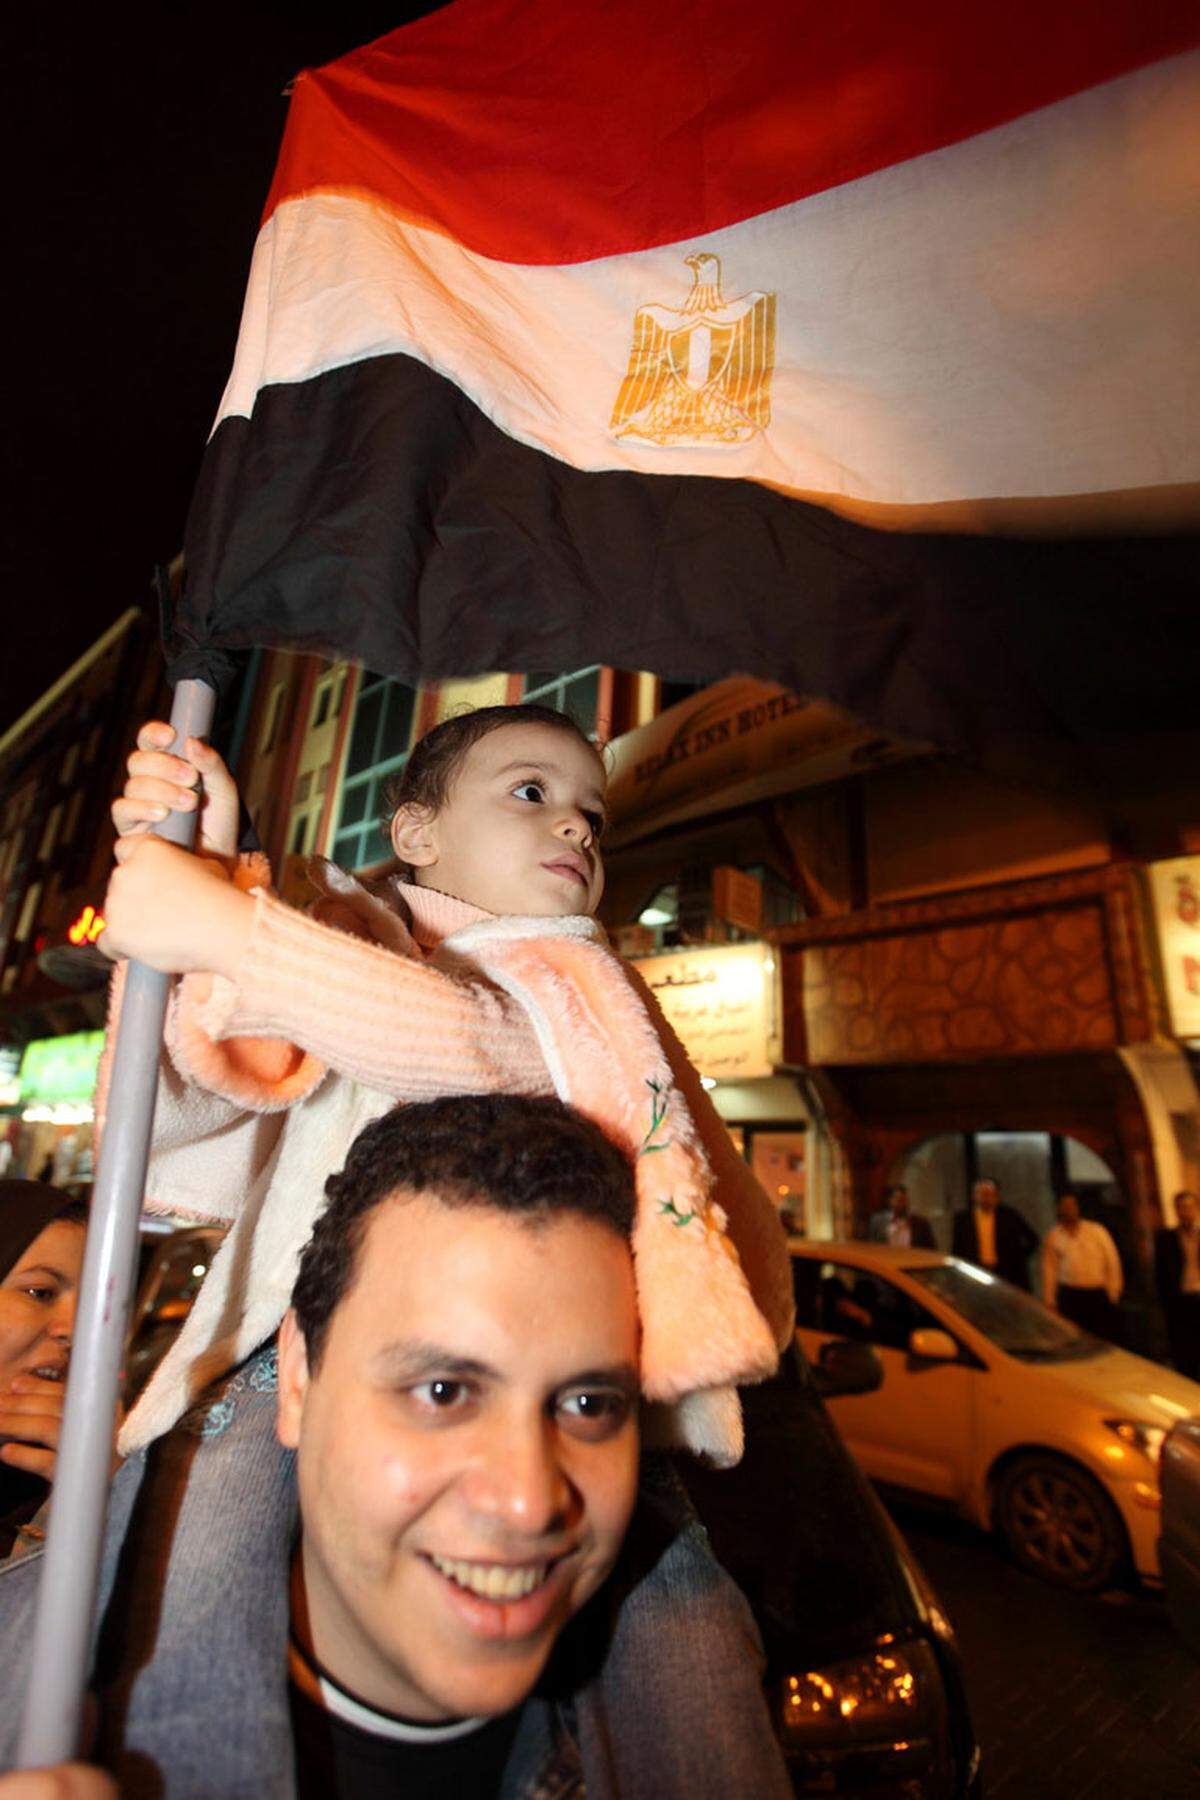 Al-Khalifa reagierte mit Freilassungen von politischen Gefangenen und bildete das Kabinett um. Ende Februar kehrte auch der bisher im Exil lebende bahrainische Schiitenanführer Hassan Mushaimaa in die Hauptstadt Manama zurück. Bei den Protesten demonstriert die schiitische Bevölkerungsmehrheit gegen das sunnitische Herrscherhaus.